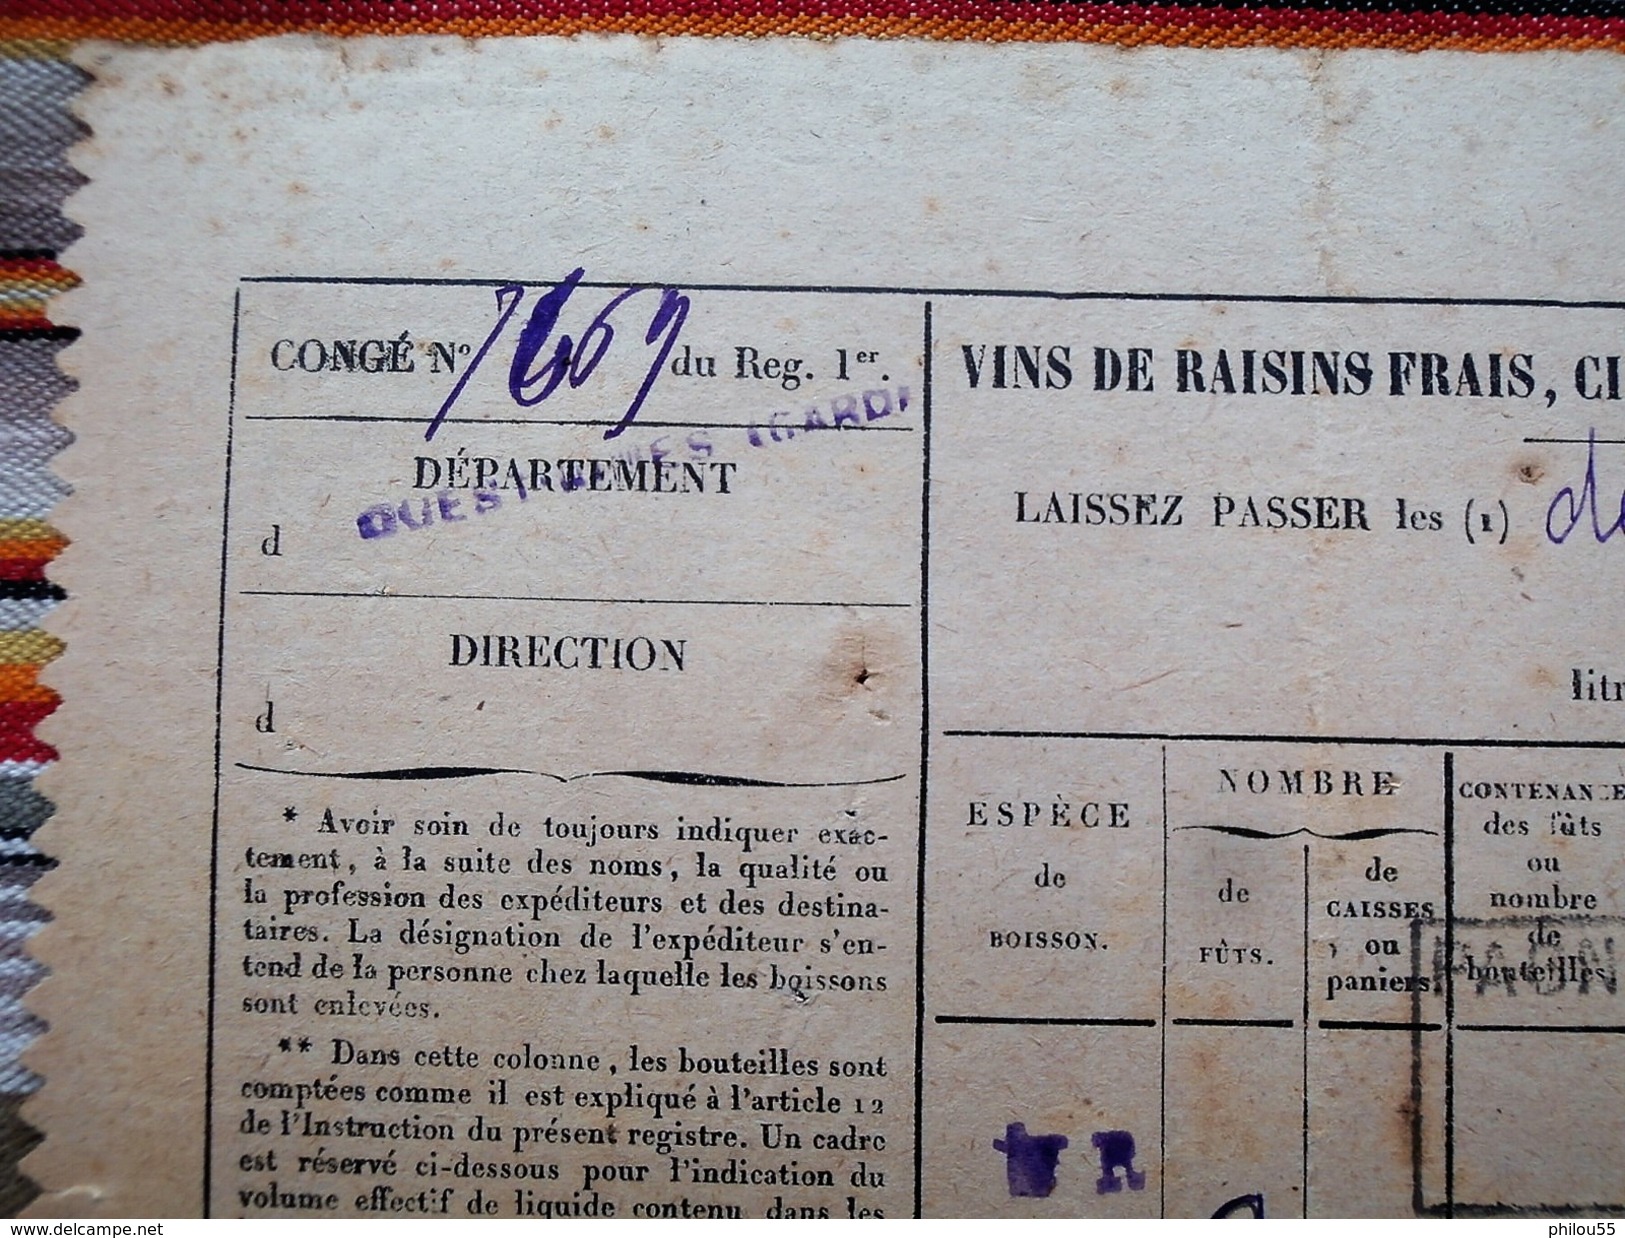 30 54 70 1902 document de transport de marchandises CHEMINS DE FER PLM + conge